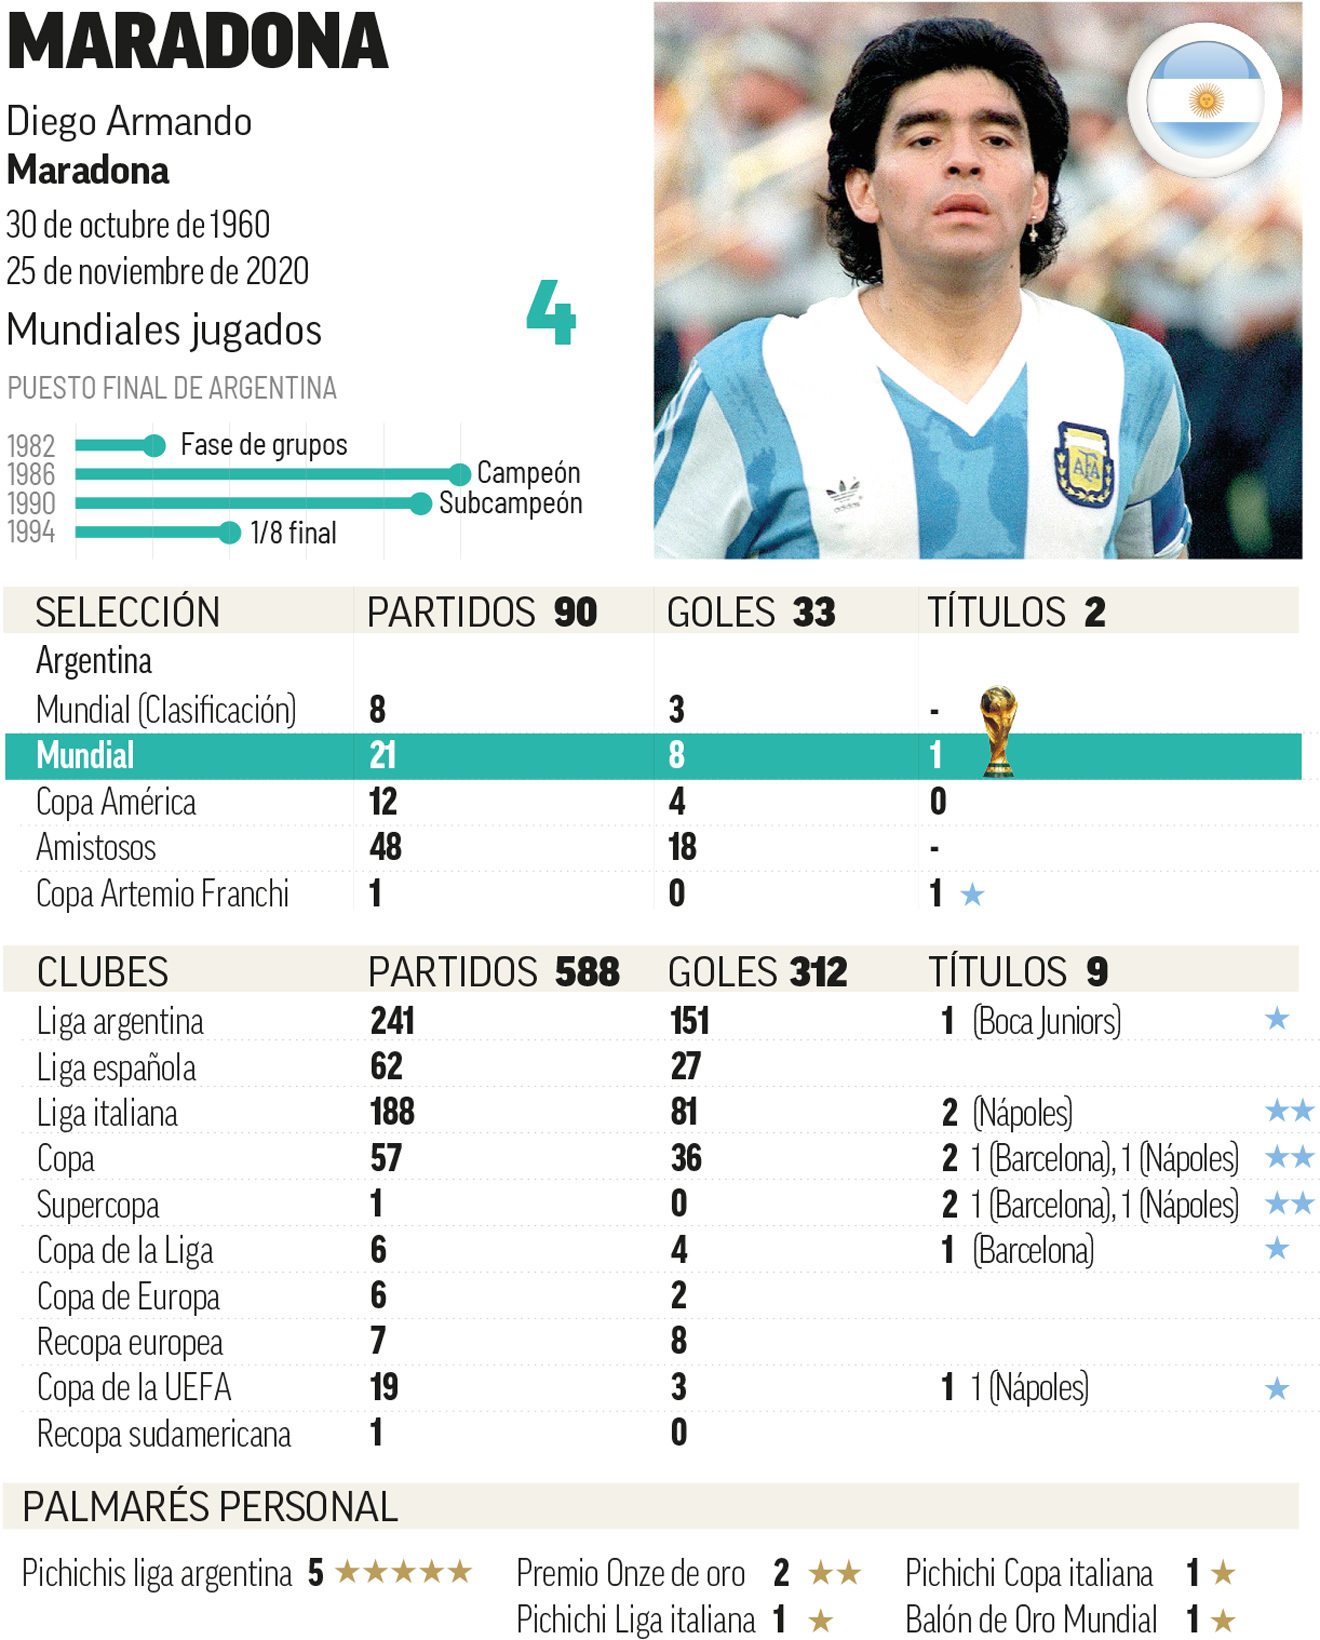 El eterno debate: ¿es Messi el mejor de la historia?